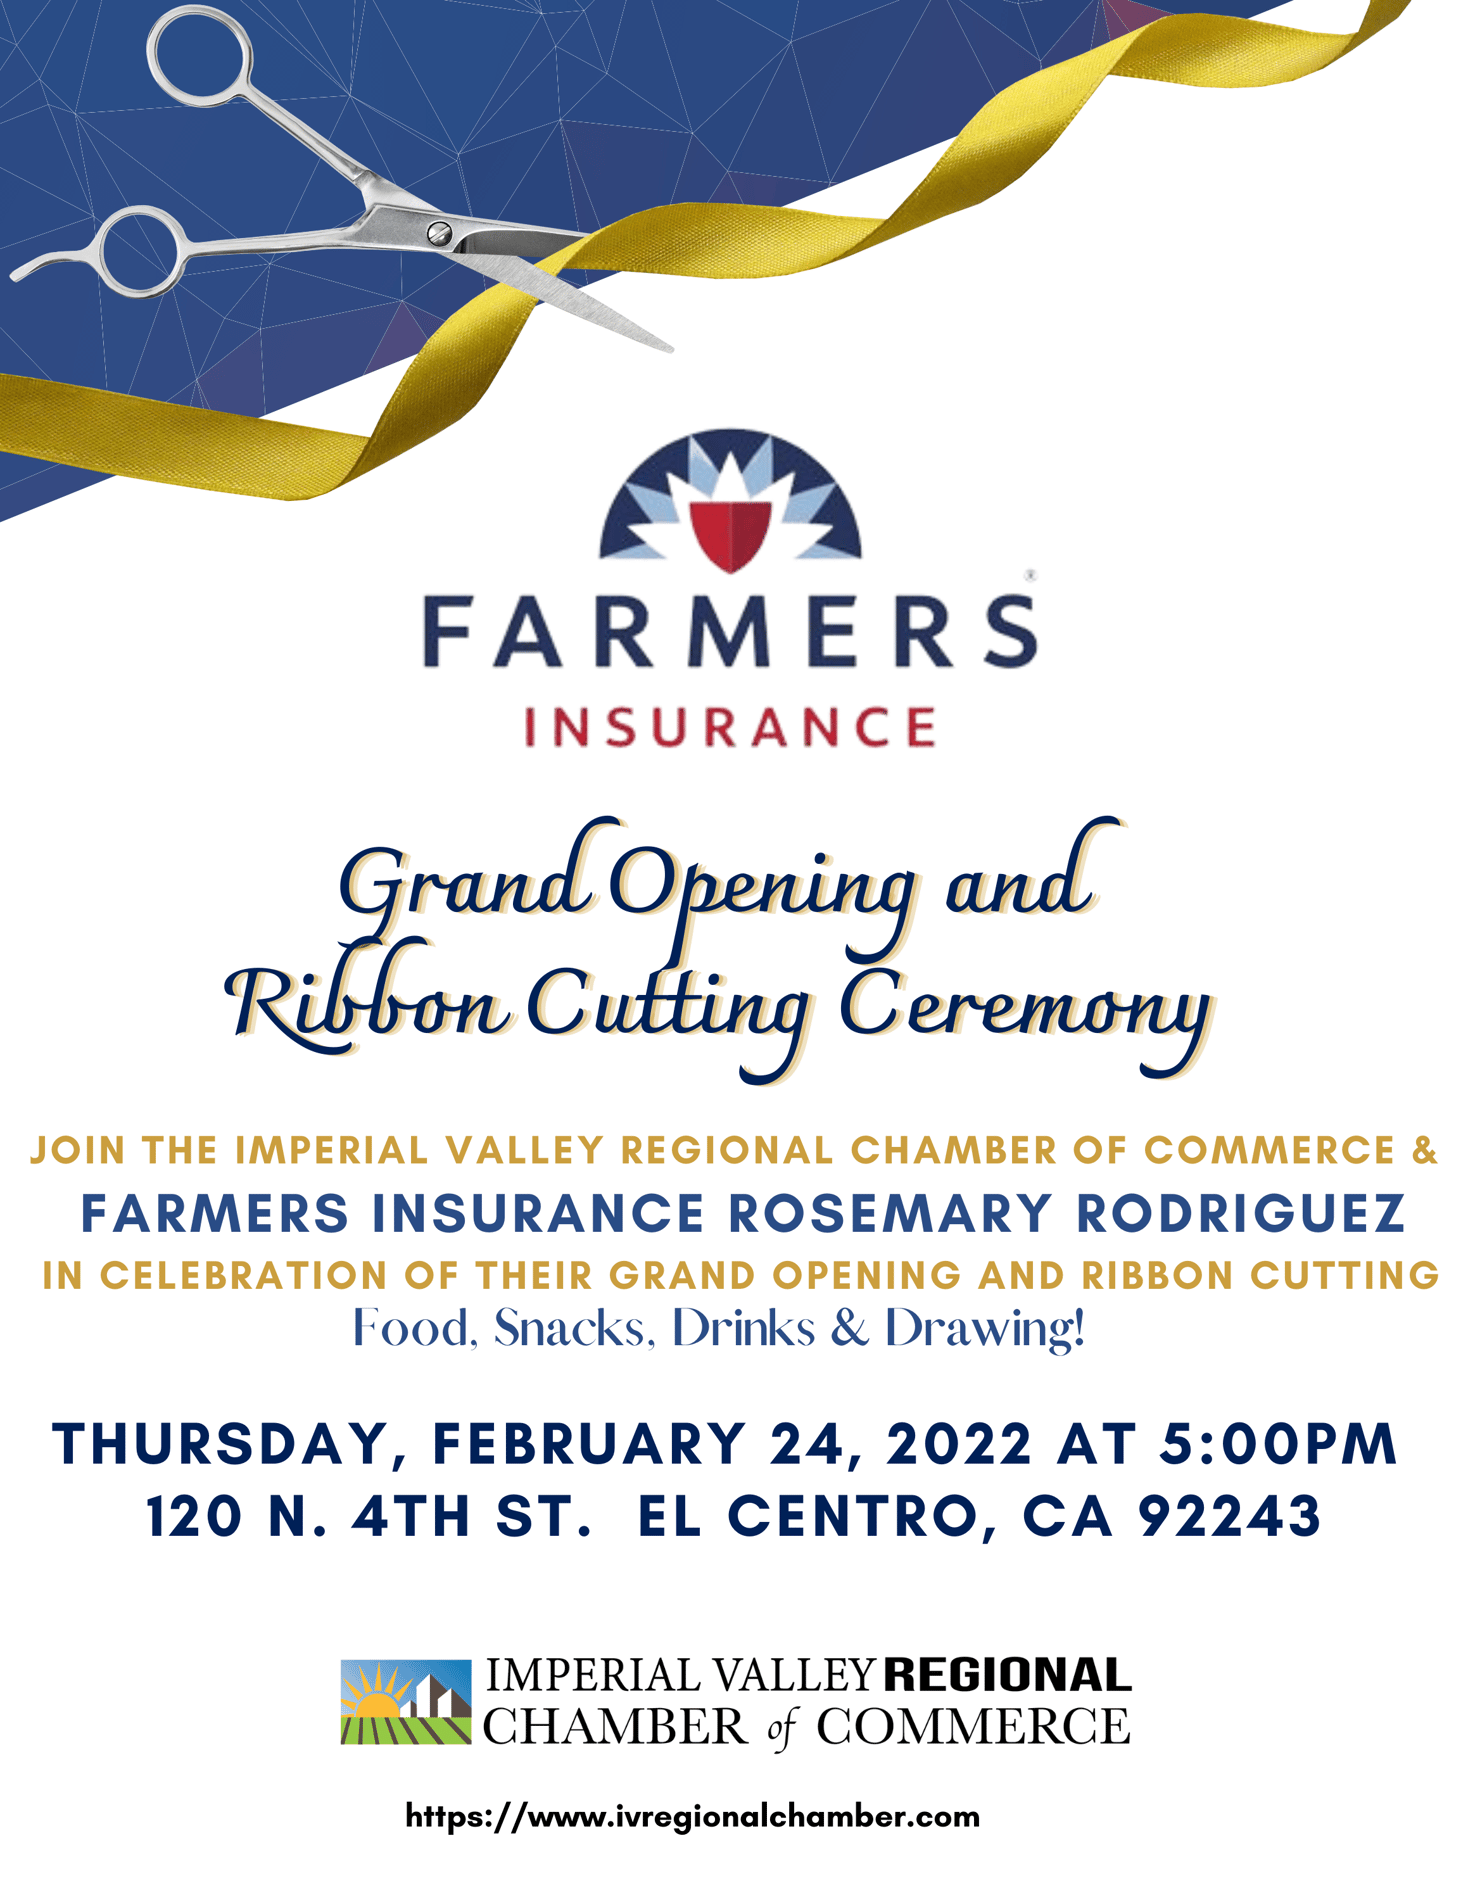 Rosemary Rodriguez Insurance Agency